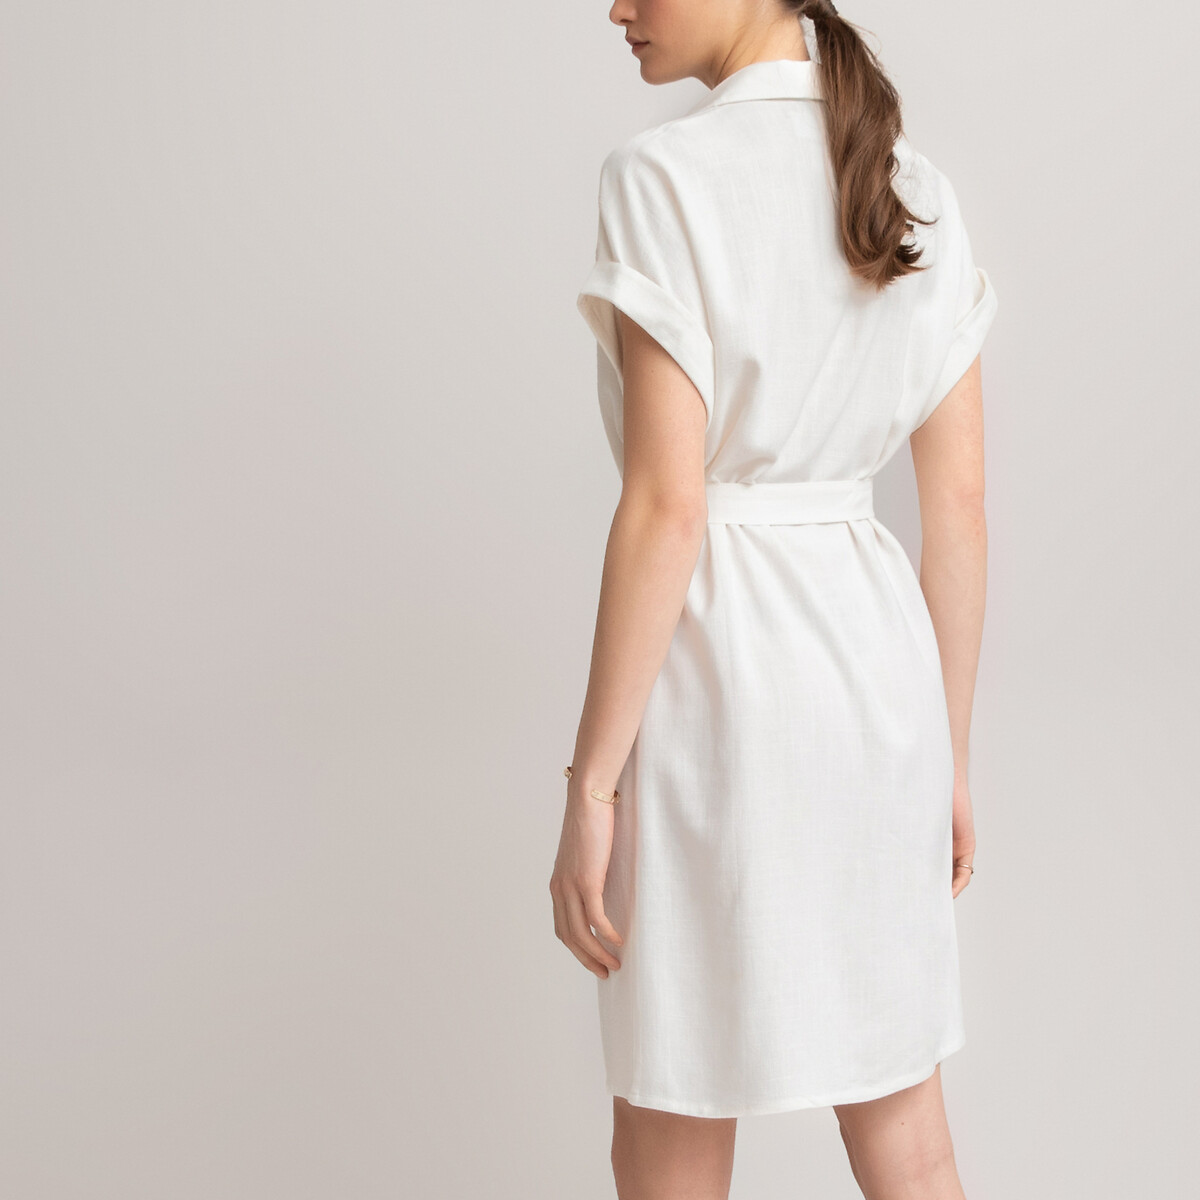 Платье-рубашка LaRedoute С короткими рукавами 36 (FR) - 42 (RUS) белый, размер 36 (FR) - 42 (RUS) С короткими рукавами 36 (FR) - 42 (RUS) белый - фото 3